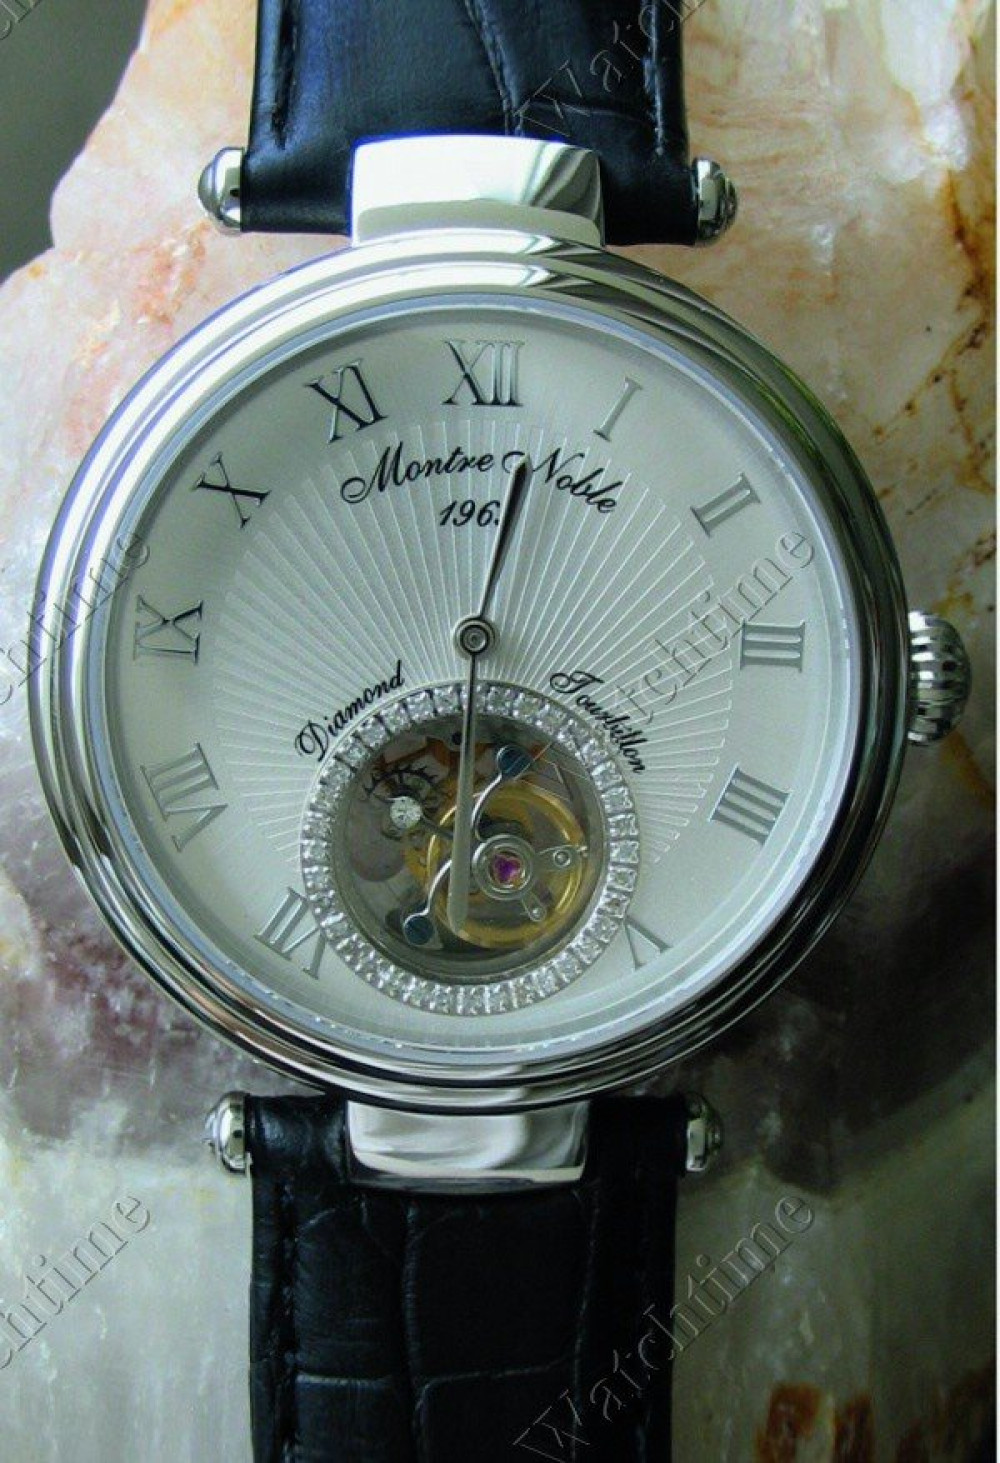 Zegarek firmy Montre Noble 1969, model Moorea Argent